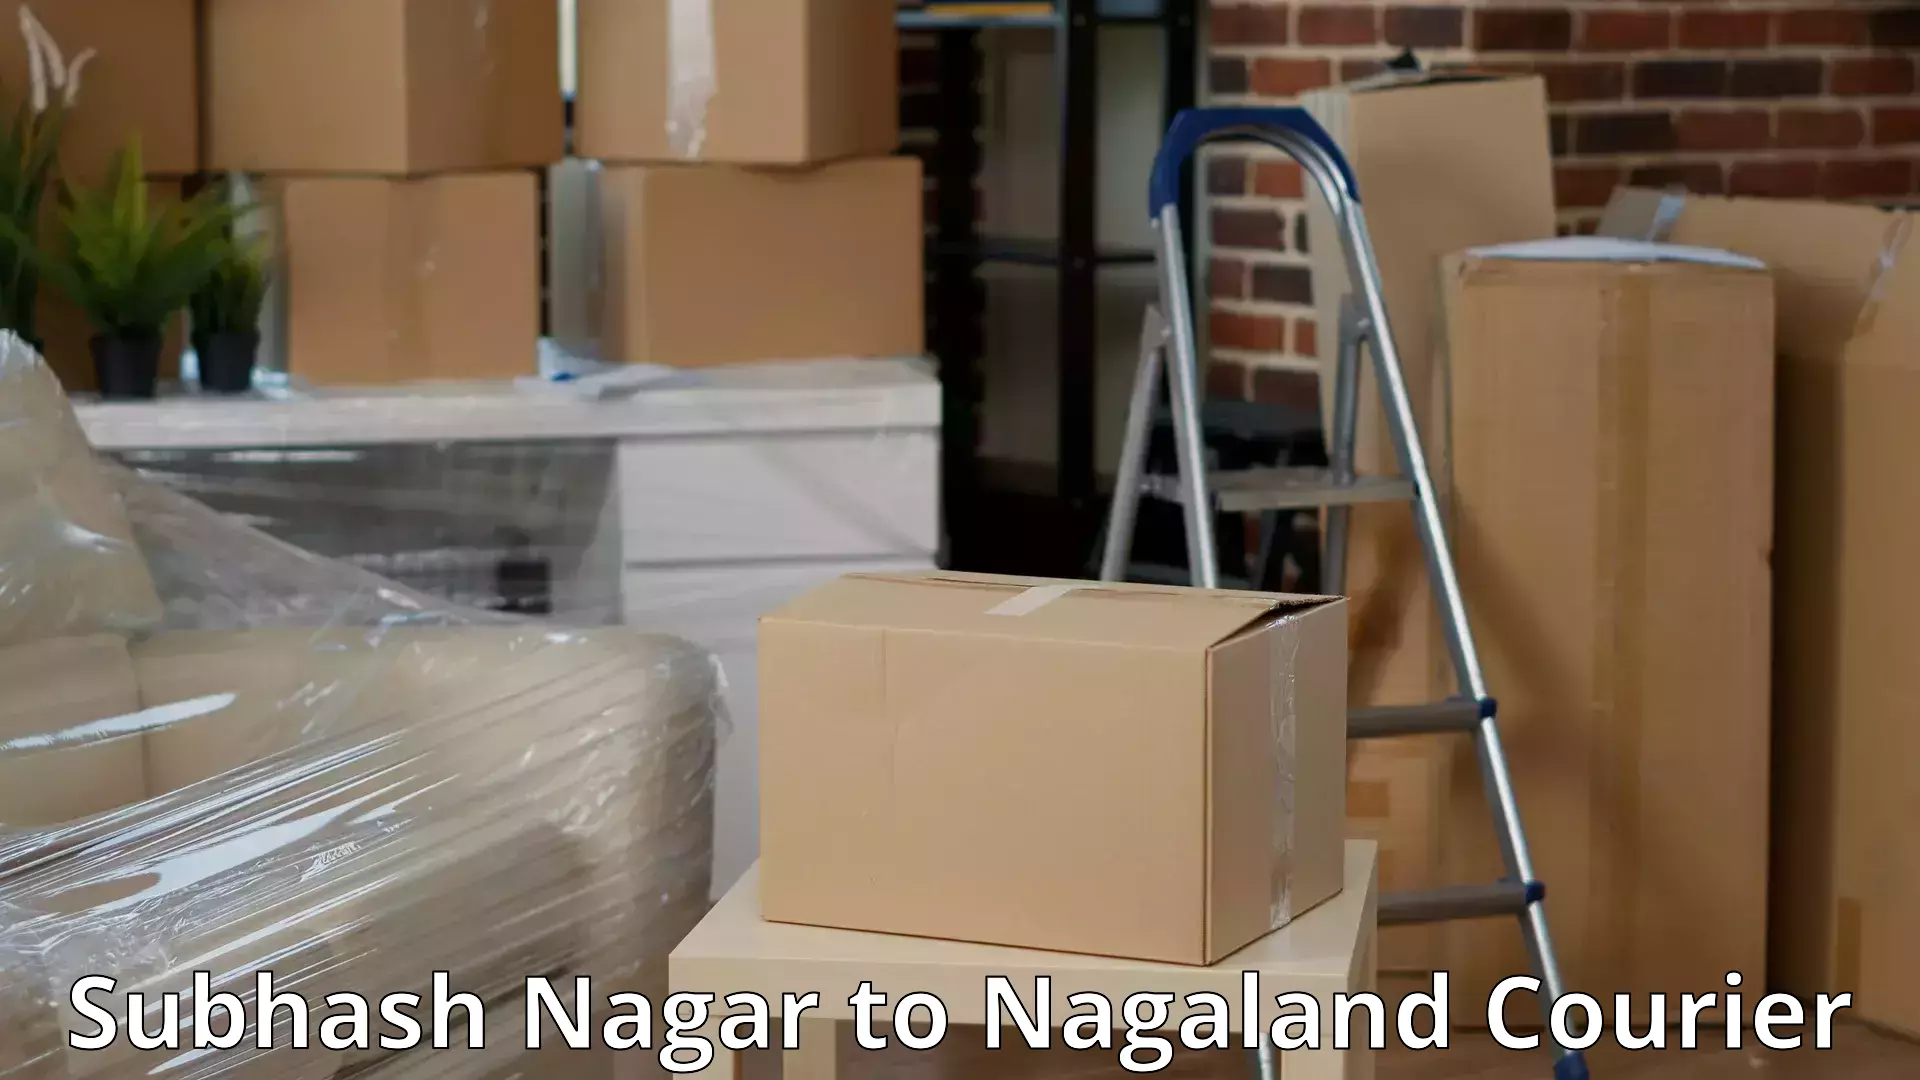 Household moving experts Subhash Nagar to Nagaland